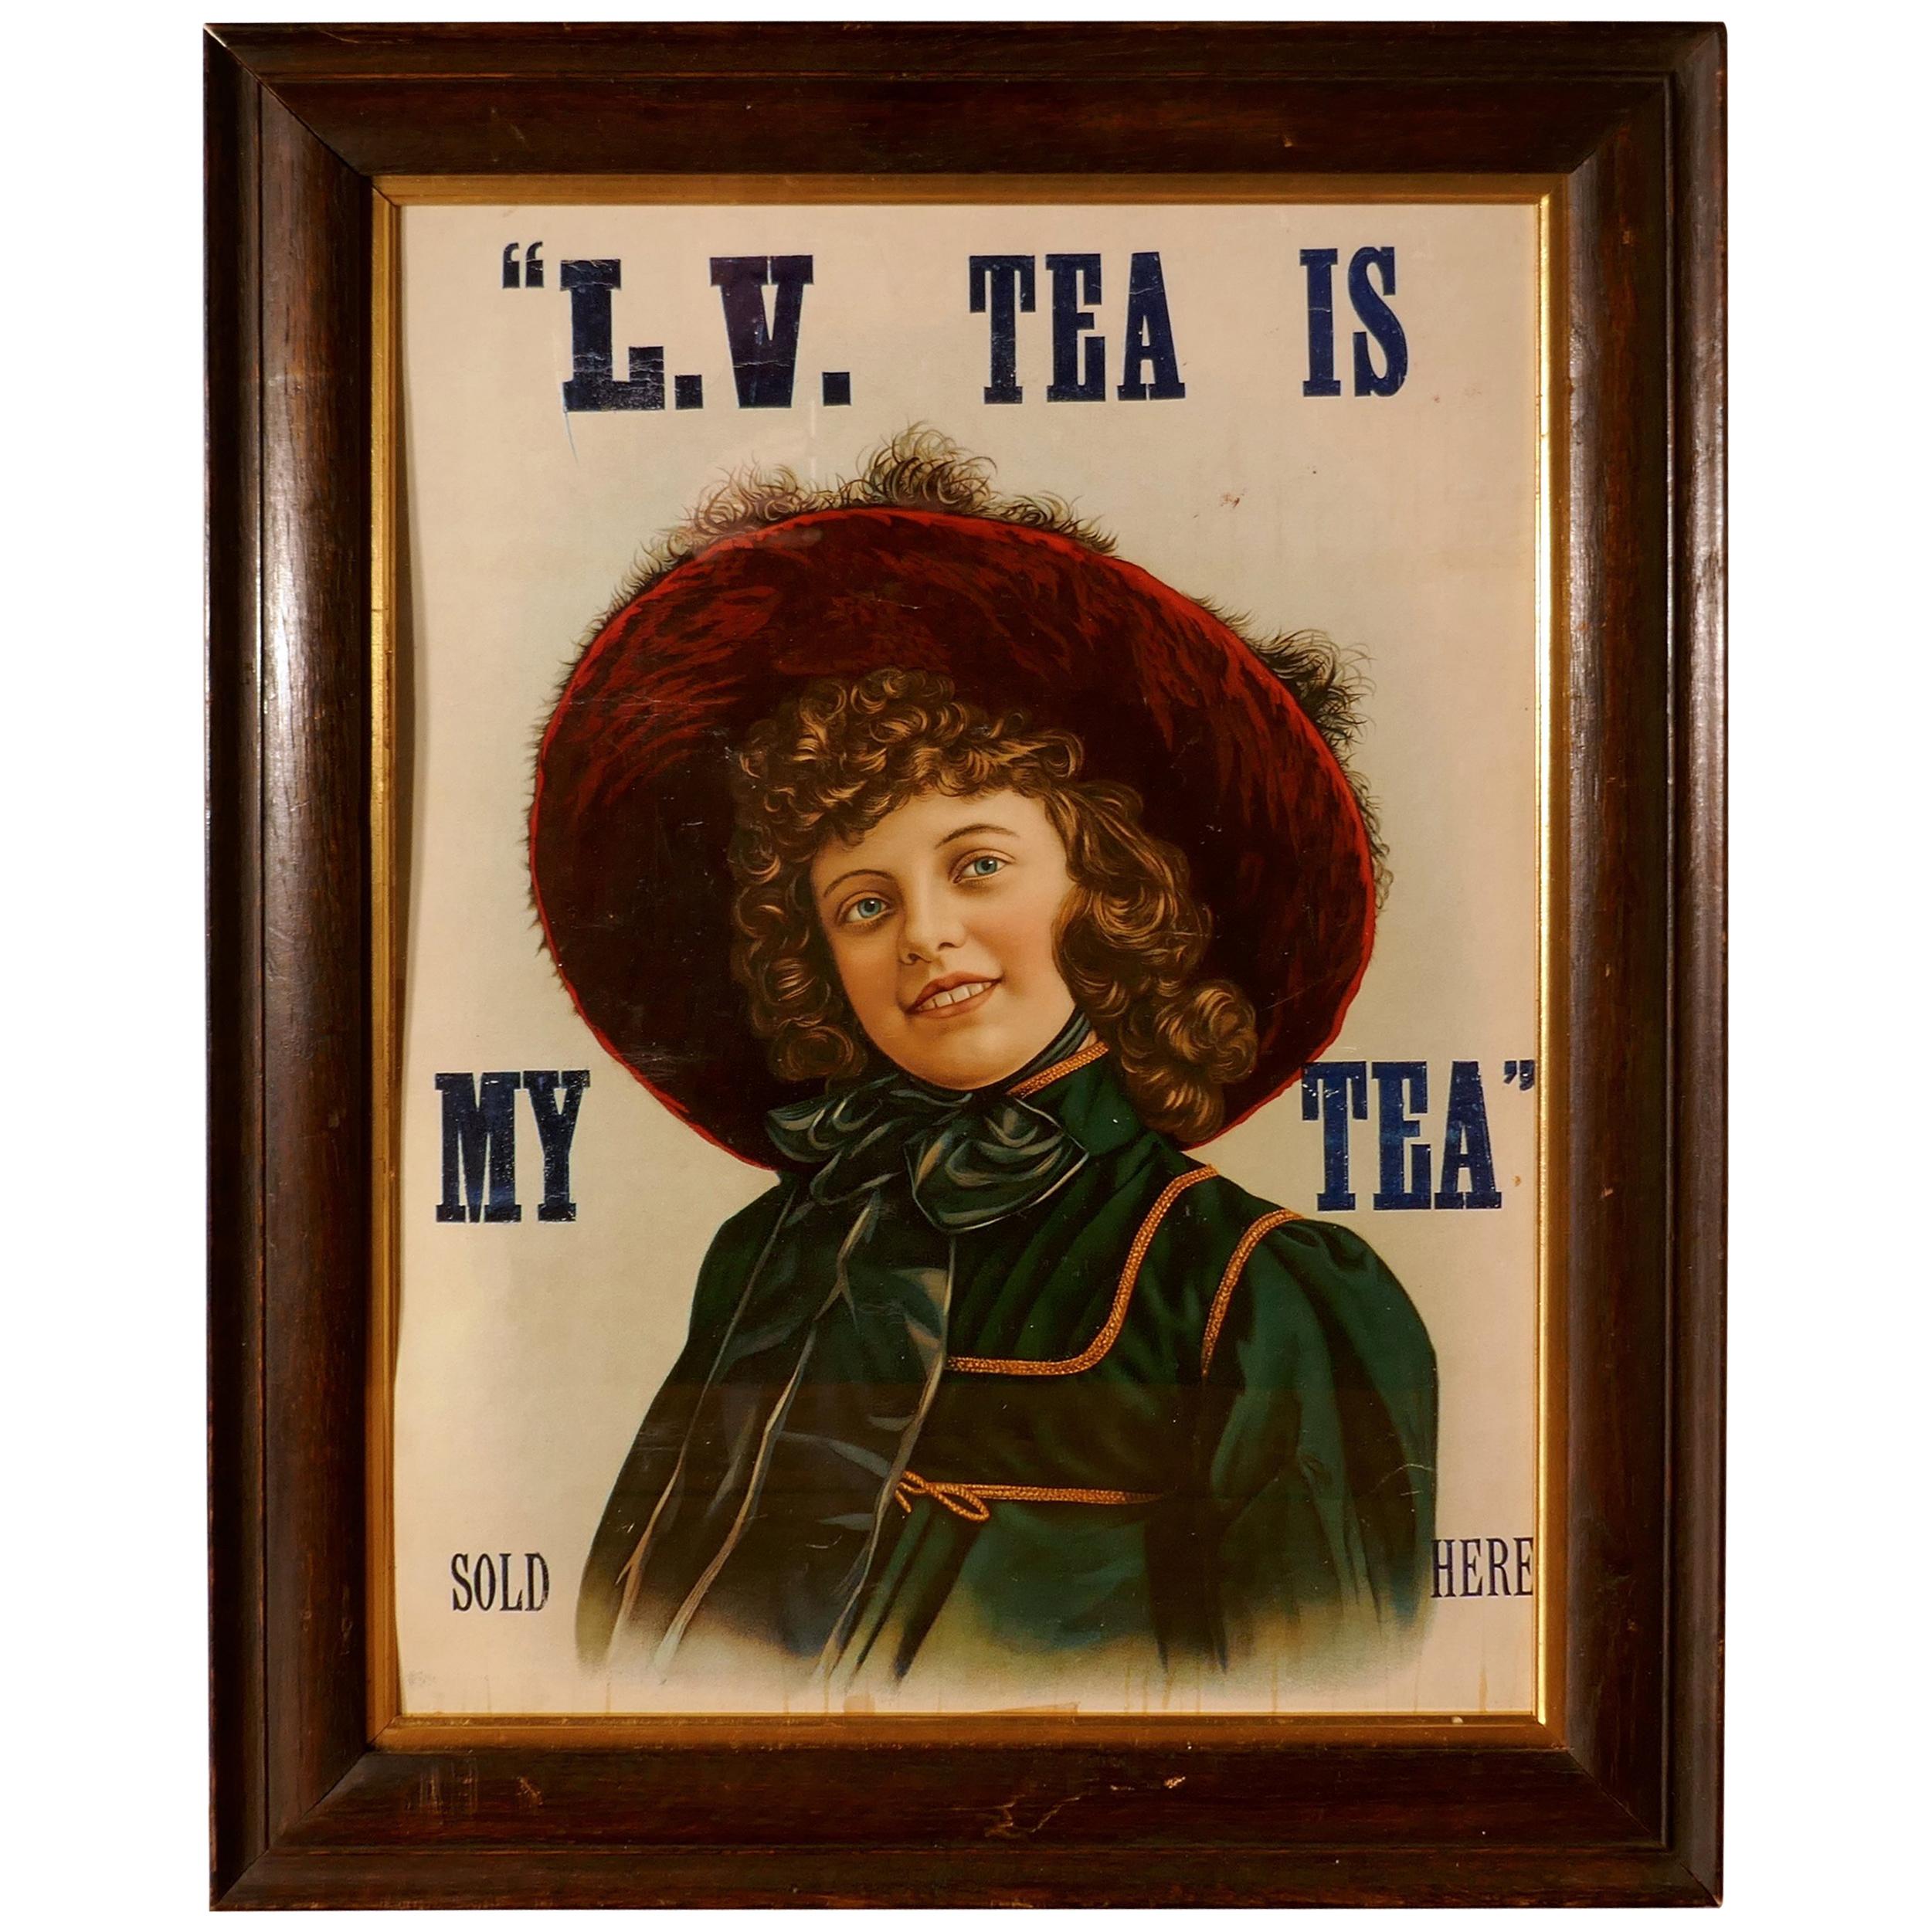 Original Edwardian Framed Tea Advertising Card Poster, “L.V. TEA IS MY TEA” Sold For Sale